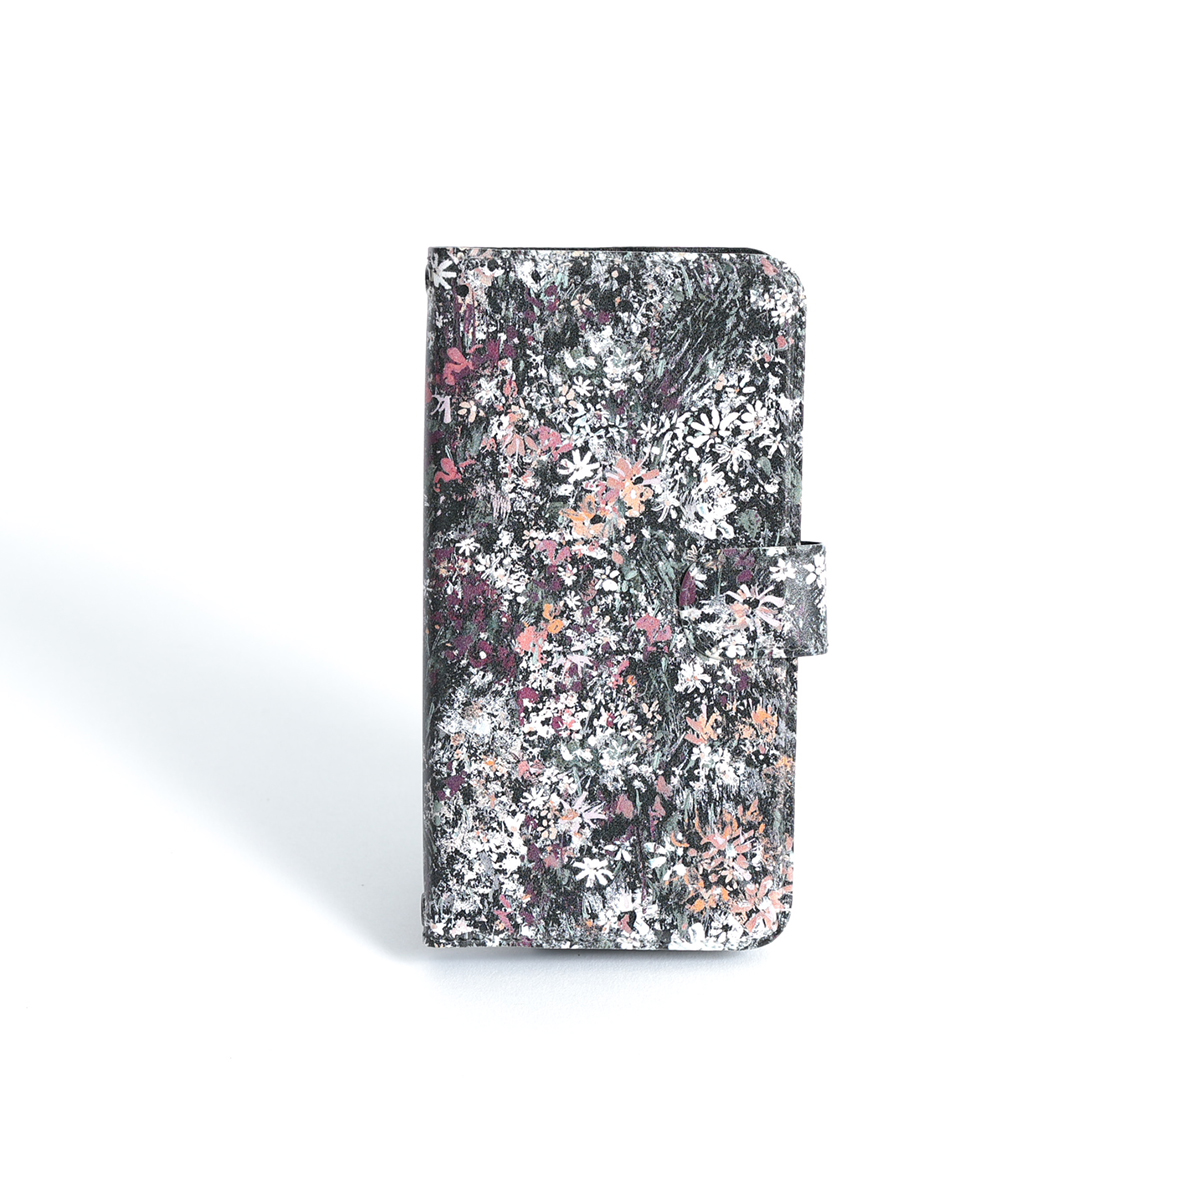 11月下旬お届け予定ご受注商品『Éternel flower BROWN』 Android notebook type case画像